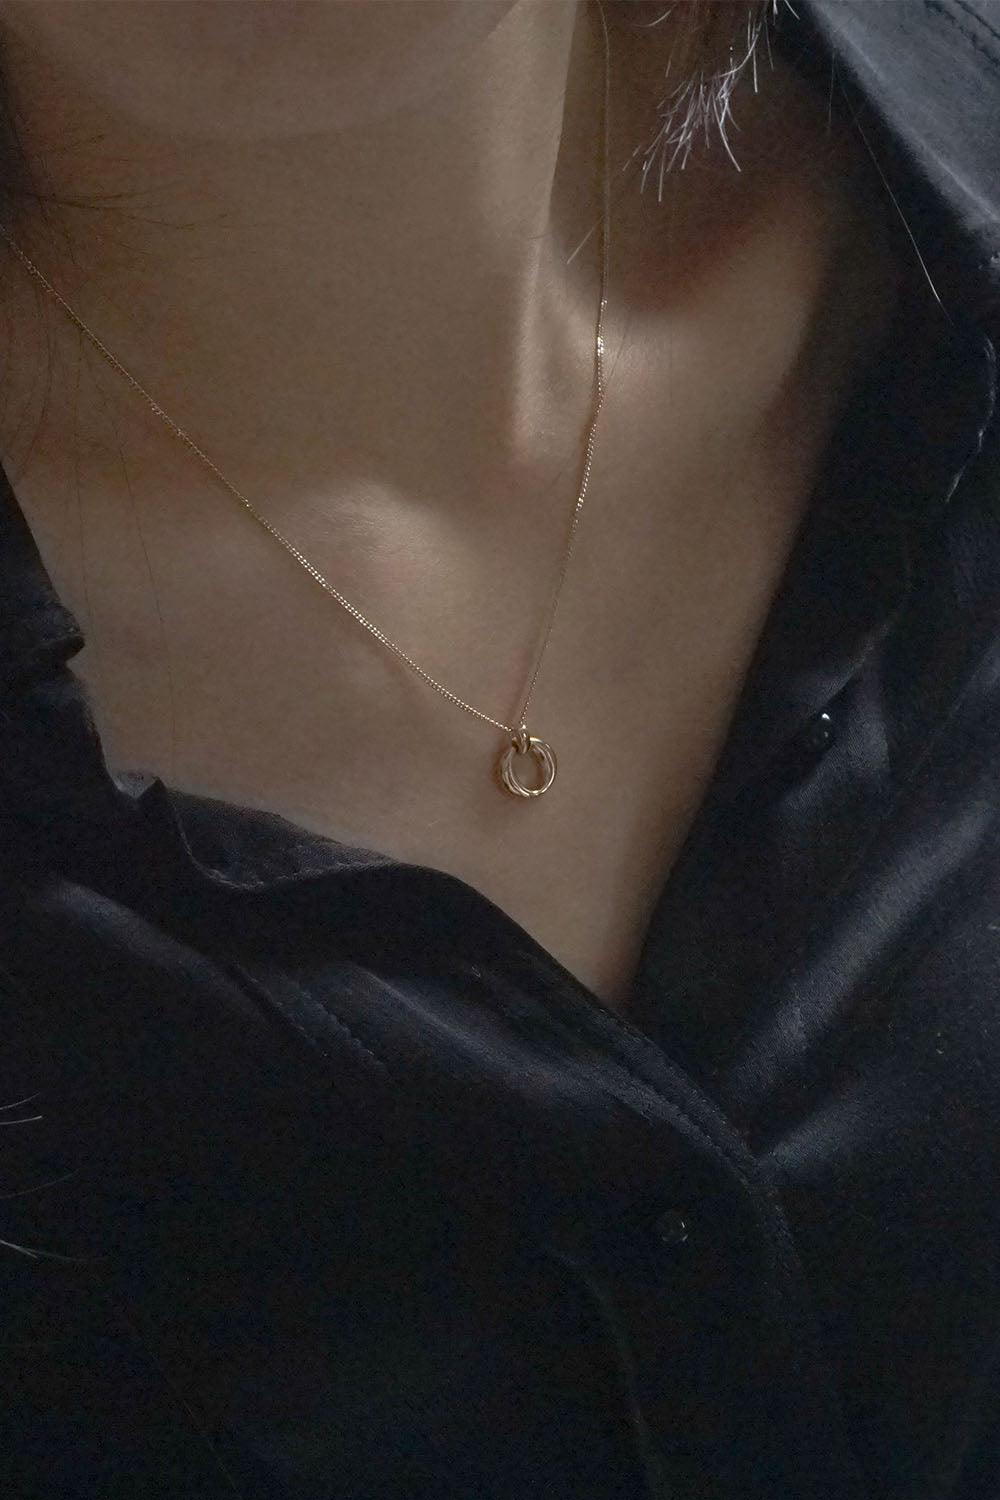 14k oval hinge necklace - 4MiLi (フォーミリ)